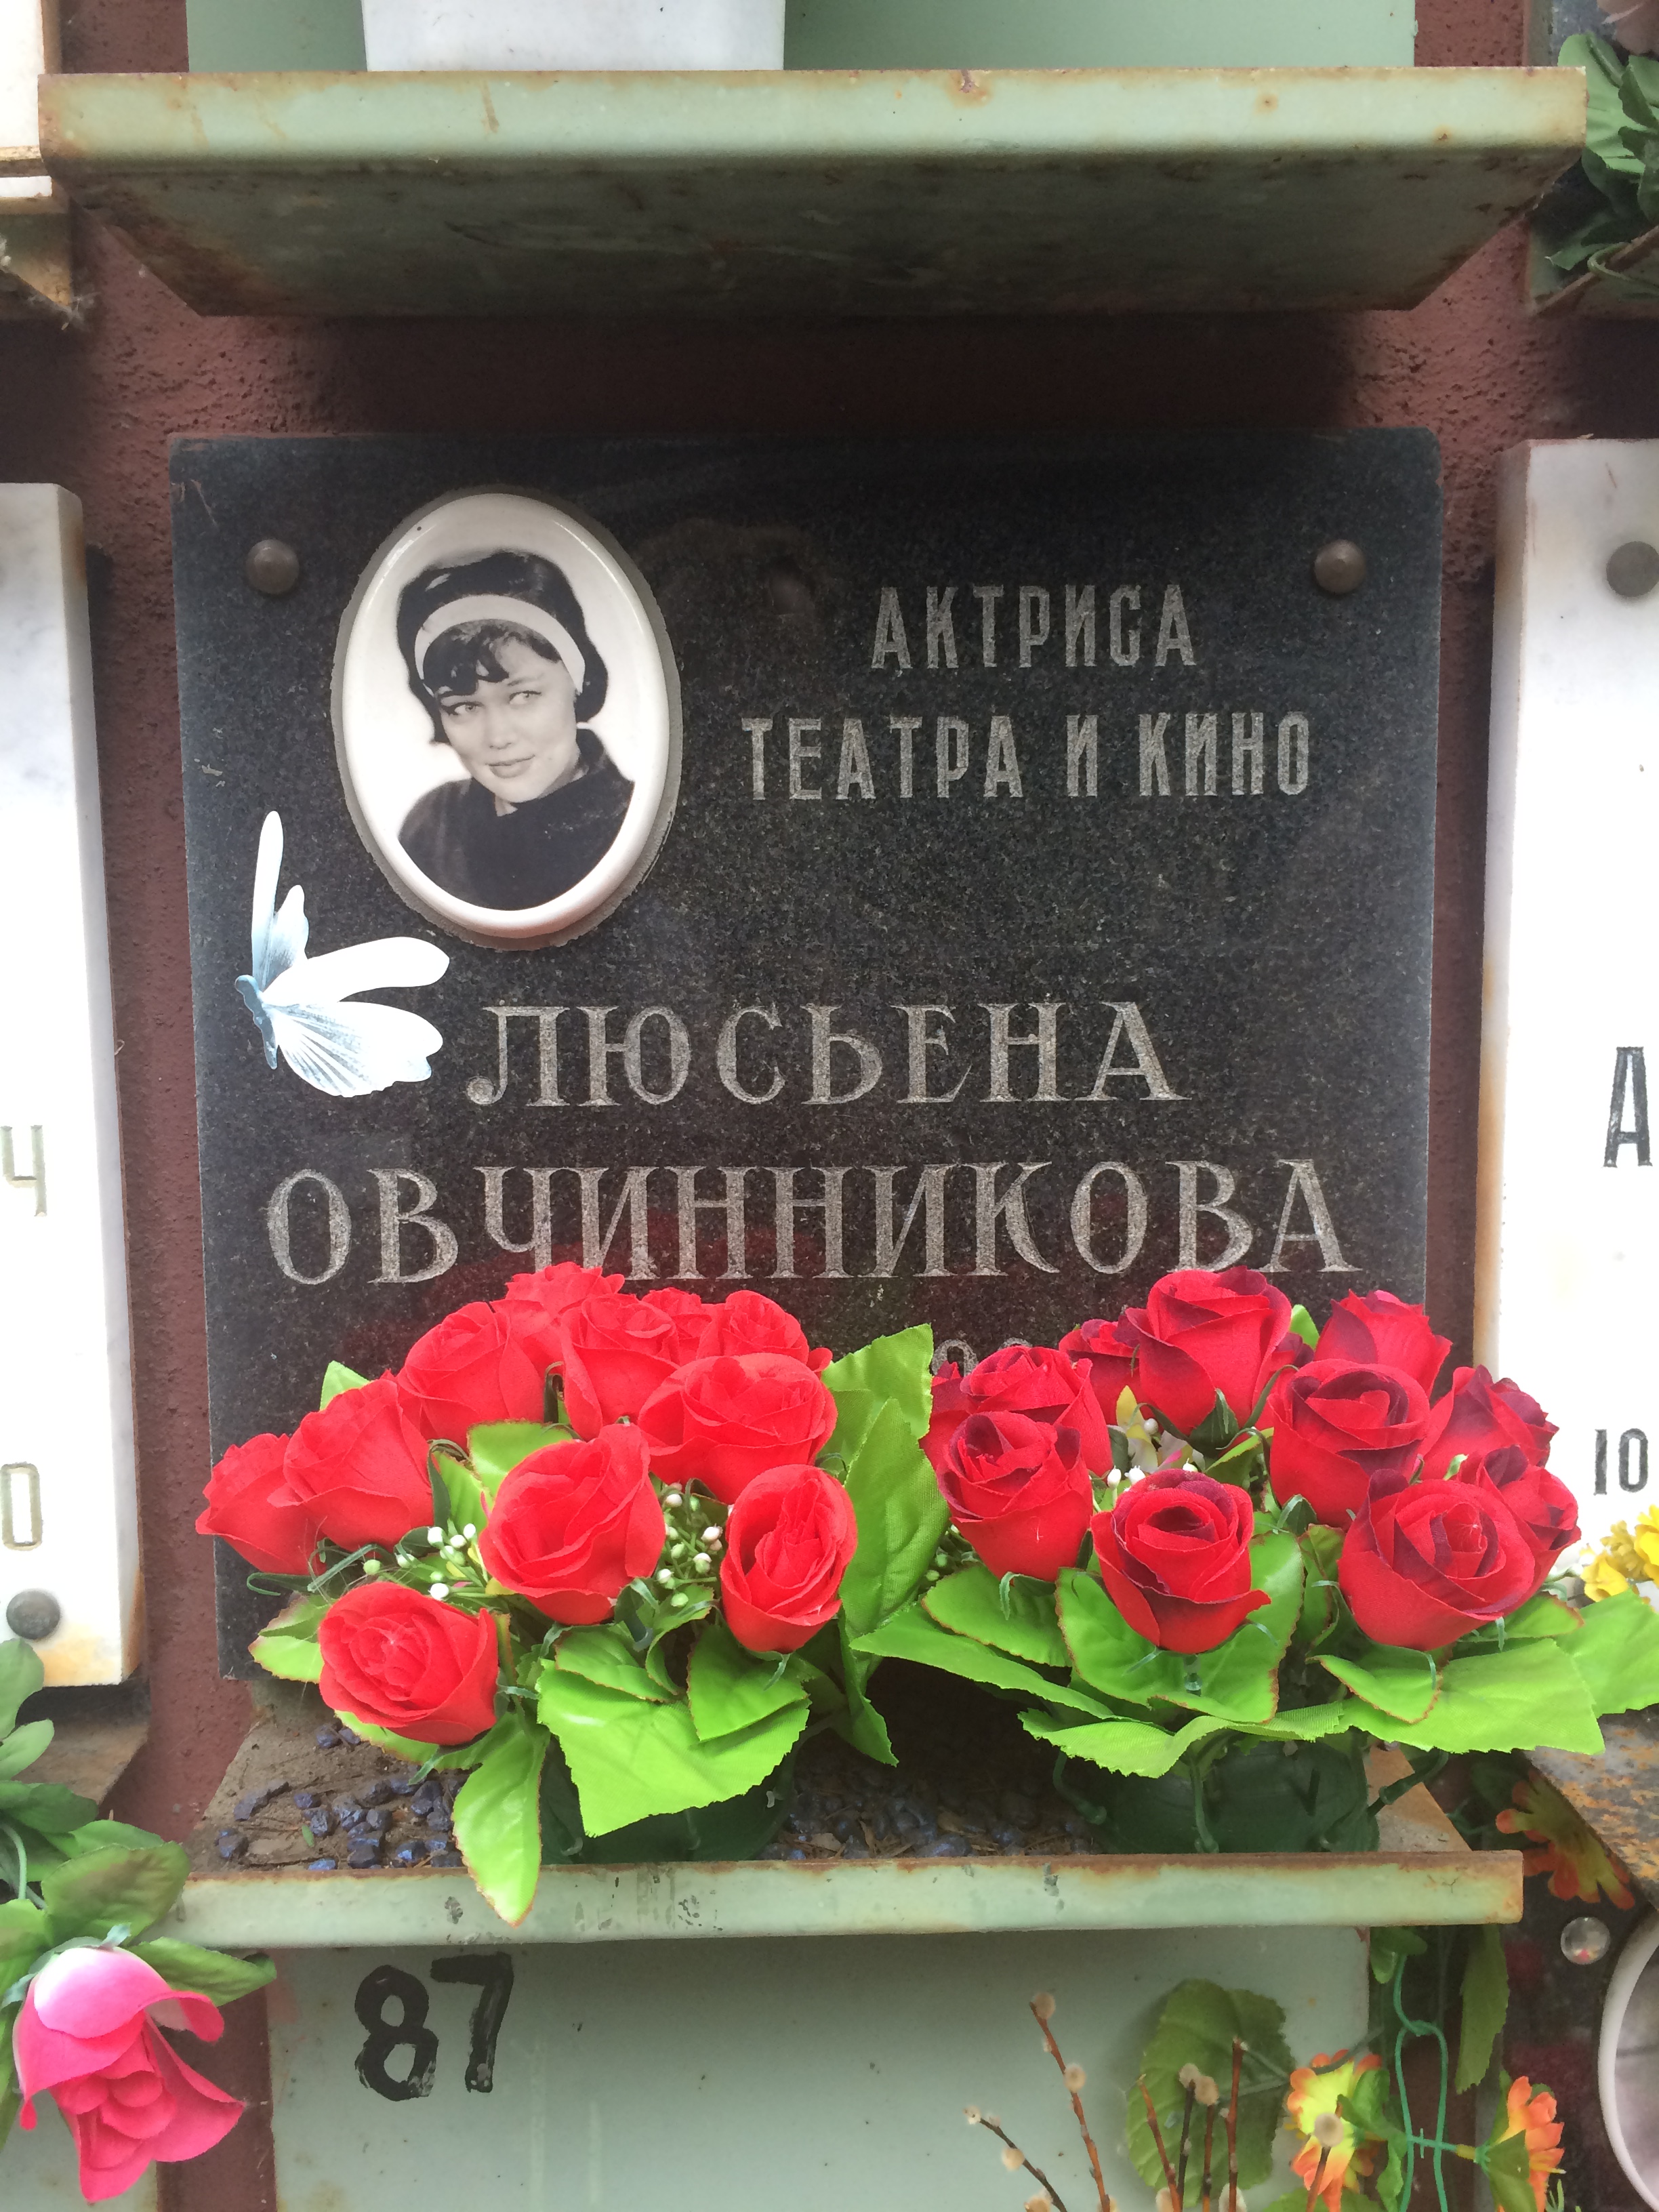 Введенское кладбище Люсьена Овчинникова